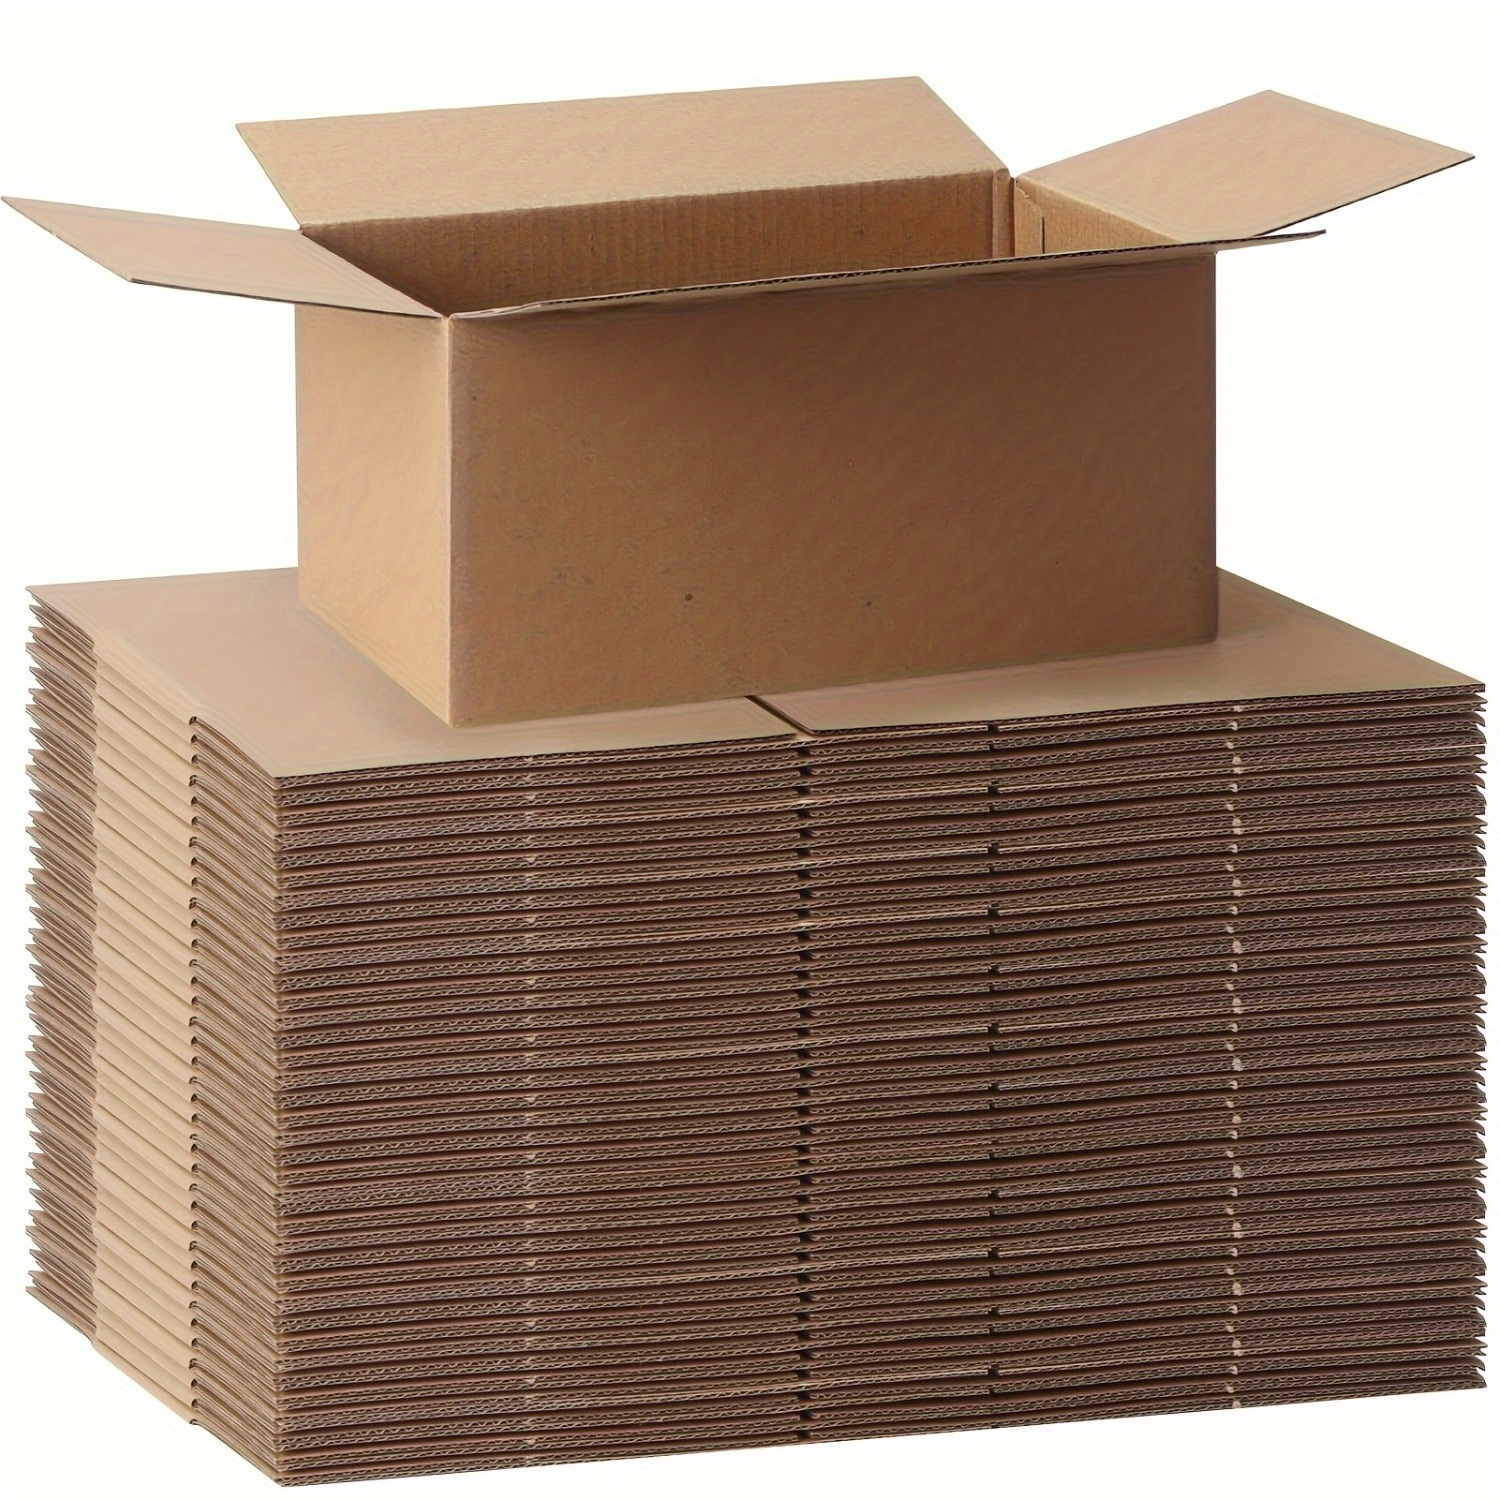 Lote 12 Cajas de cartón para almacenaje, mudanza, embalaje, ropa, enví –